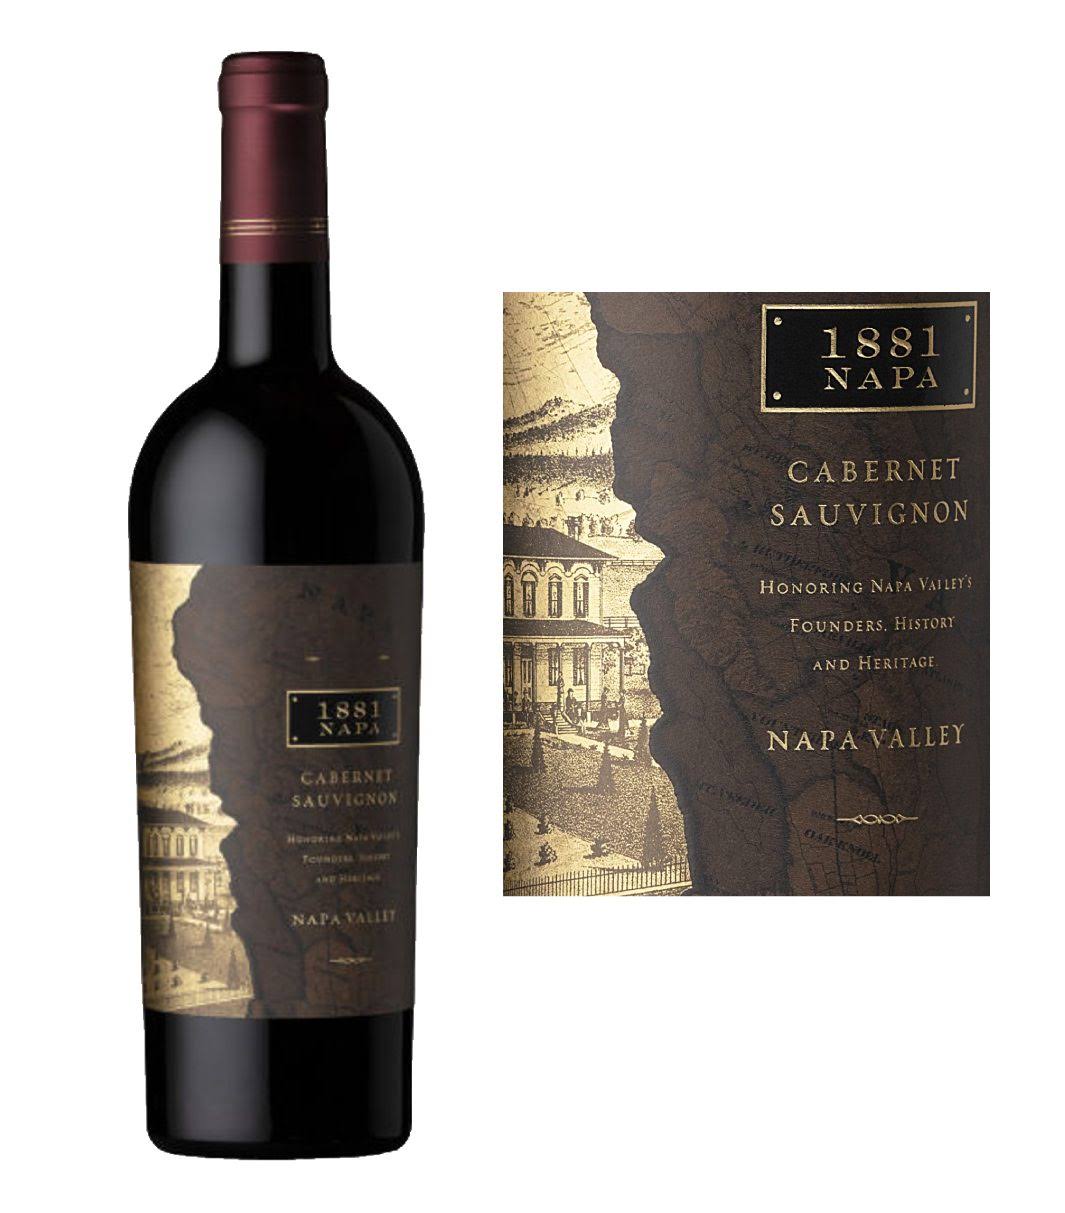 1881 NAPA Cabernet Sauvignon 2018 (750 ml)